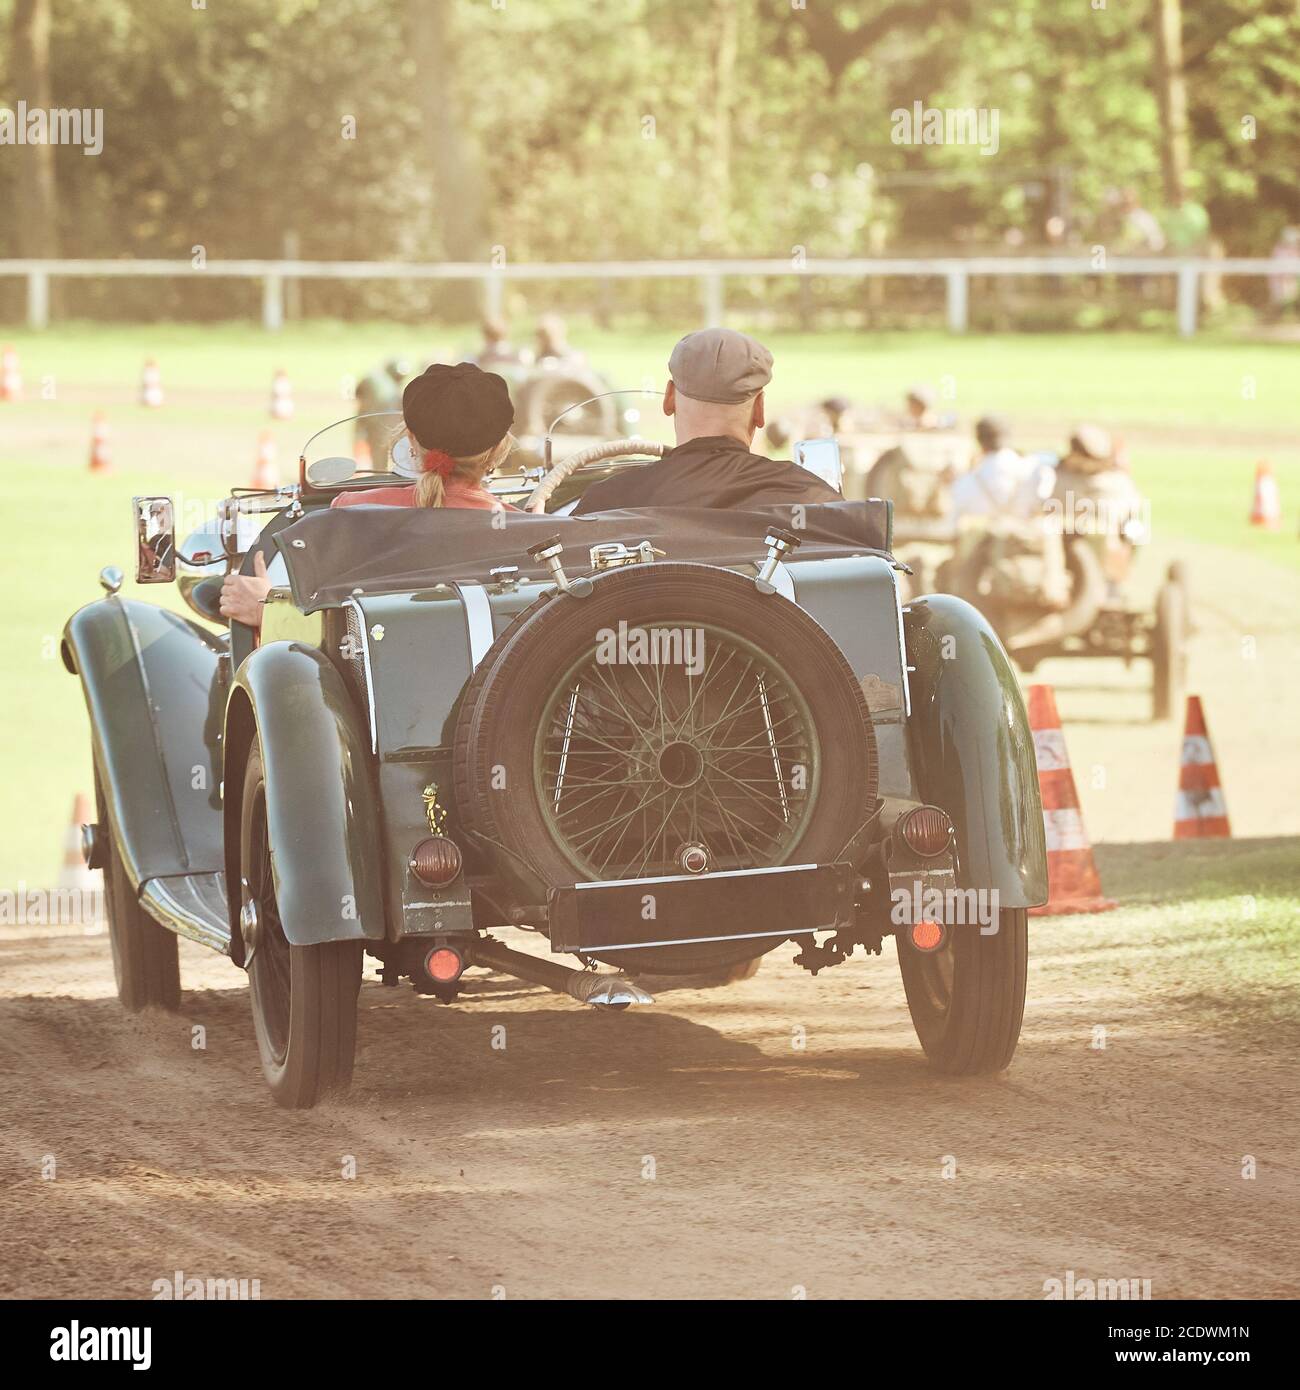 Oldtimer carrera de autos a principios de verano sobre una pista de hierba Foto de stock